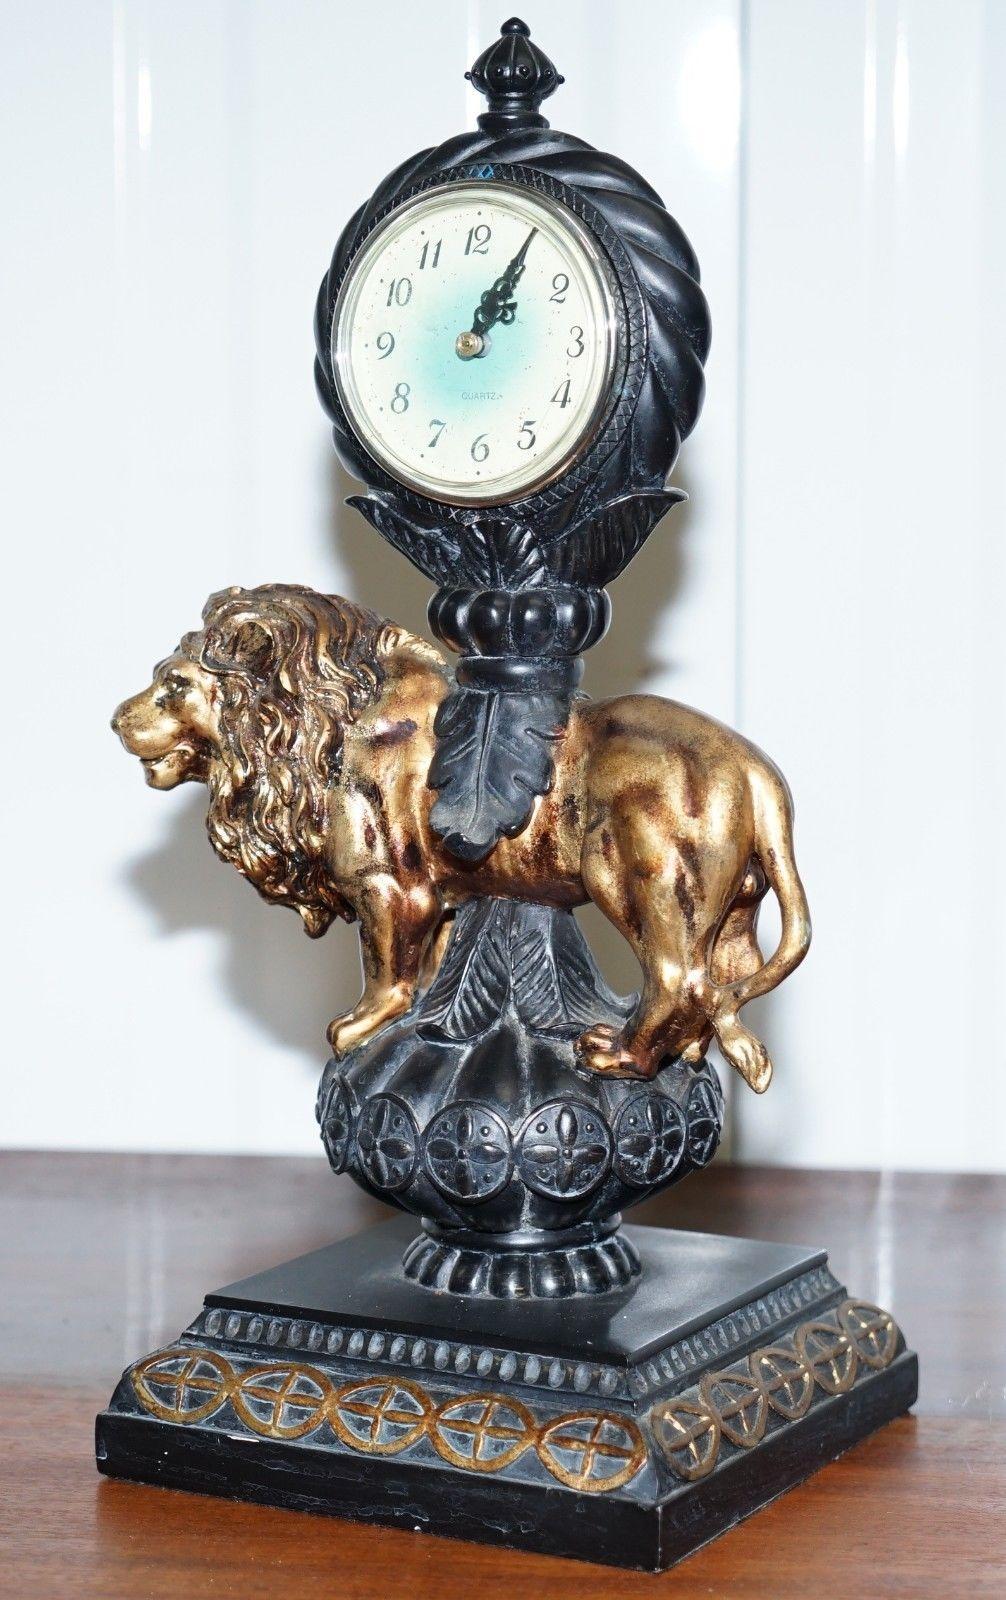 Wir sind erfreut, diese schöne dekorative Manteluhr eines sehr königlich aussehenden Löwen zum Verkauf anzubieten 

Eine sehr schöne verschnörkelte Uhr, das Uhrwerk ist ein modernes digitales Stück 

Wie Sie sehen können, ist diese Uhr mit